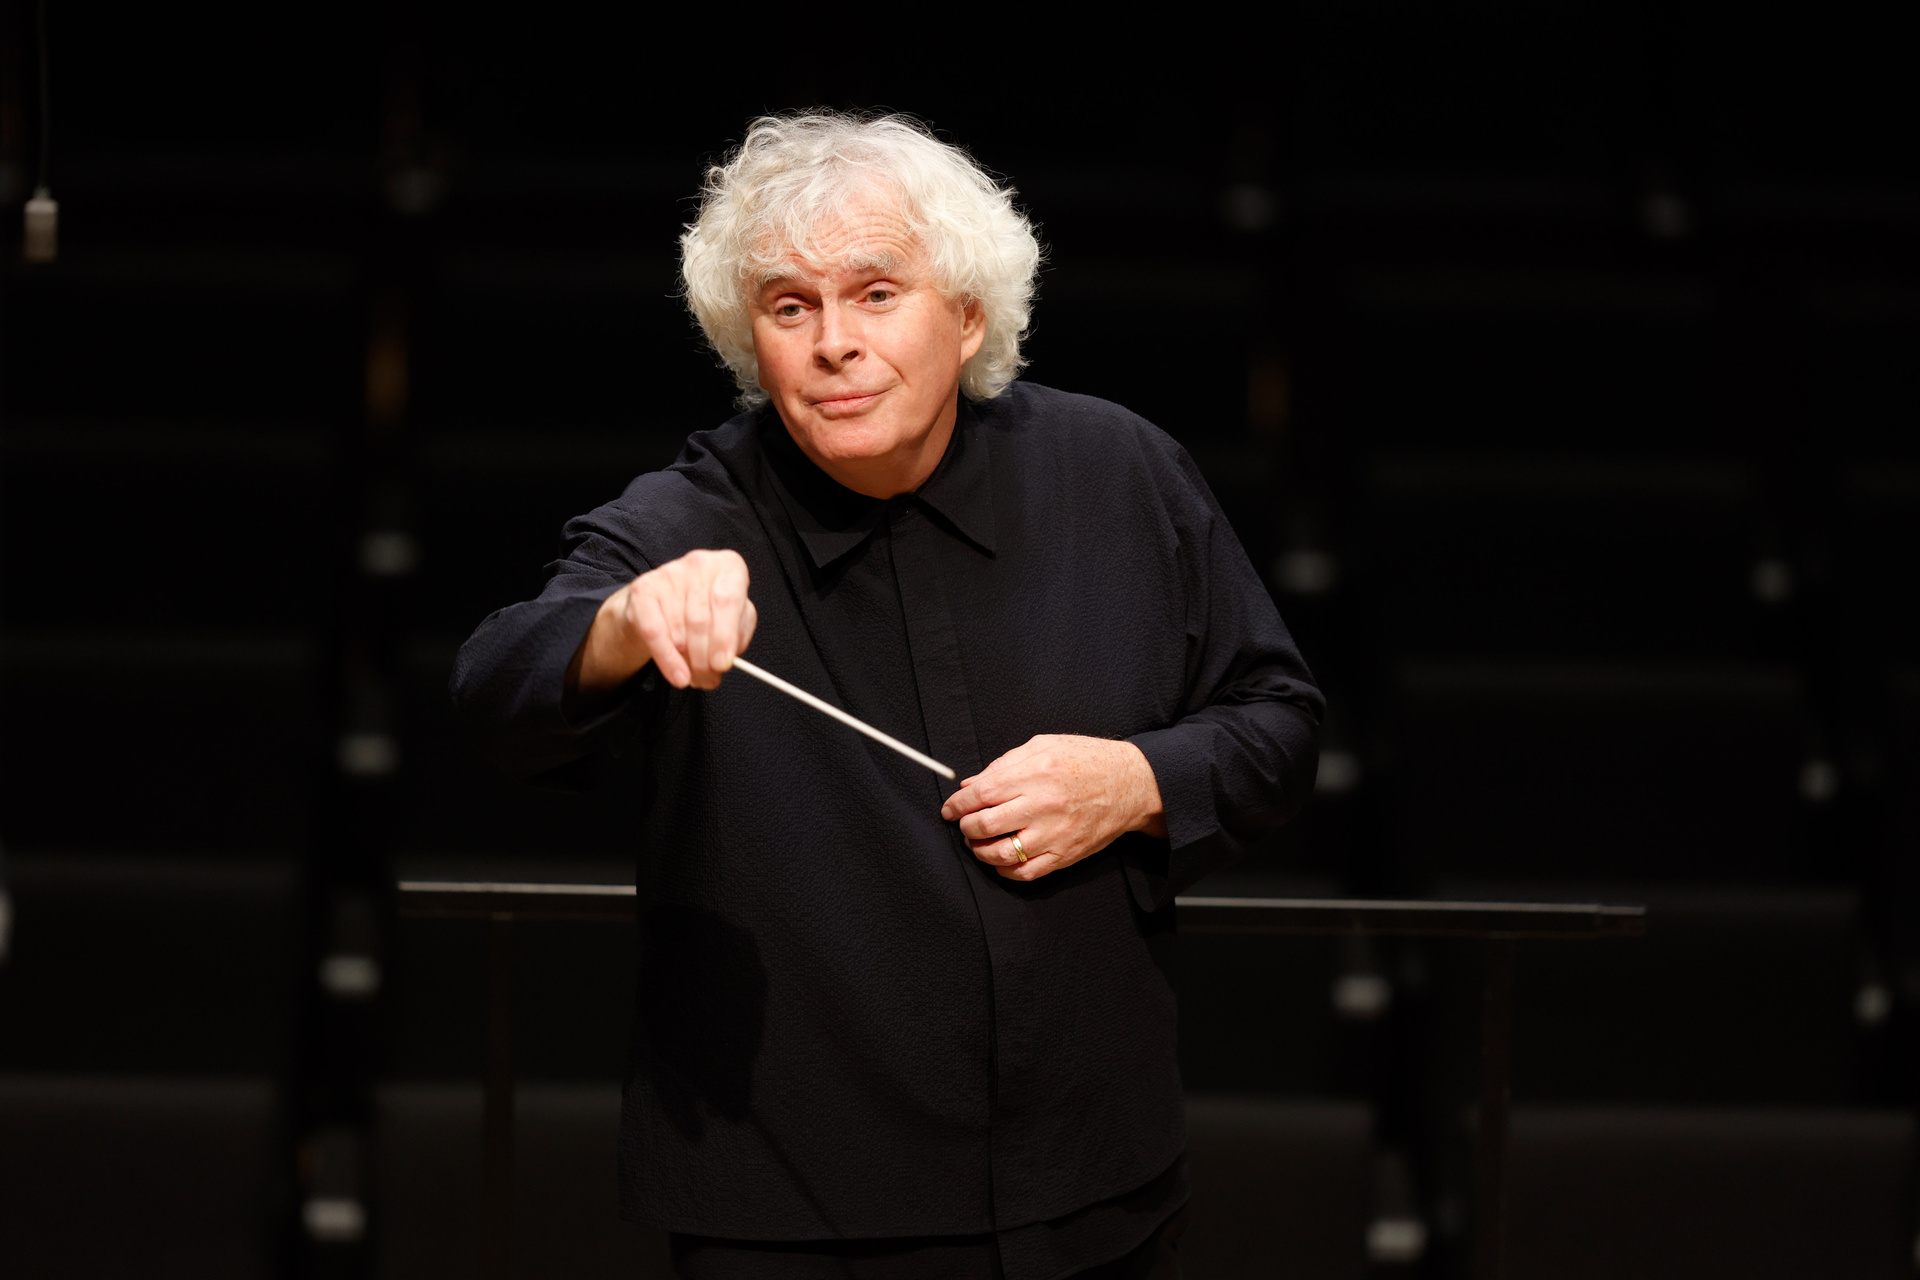 Chefdirigent des Symphonieorchesters des Bayerischen Rundfunks Sir Simon Rattle
© ZDF und BR, Astrid Ackermann